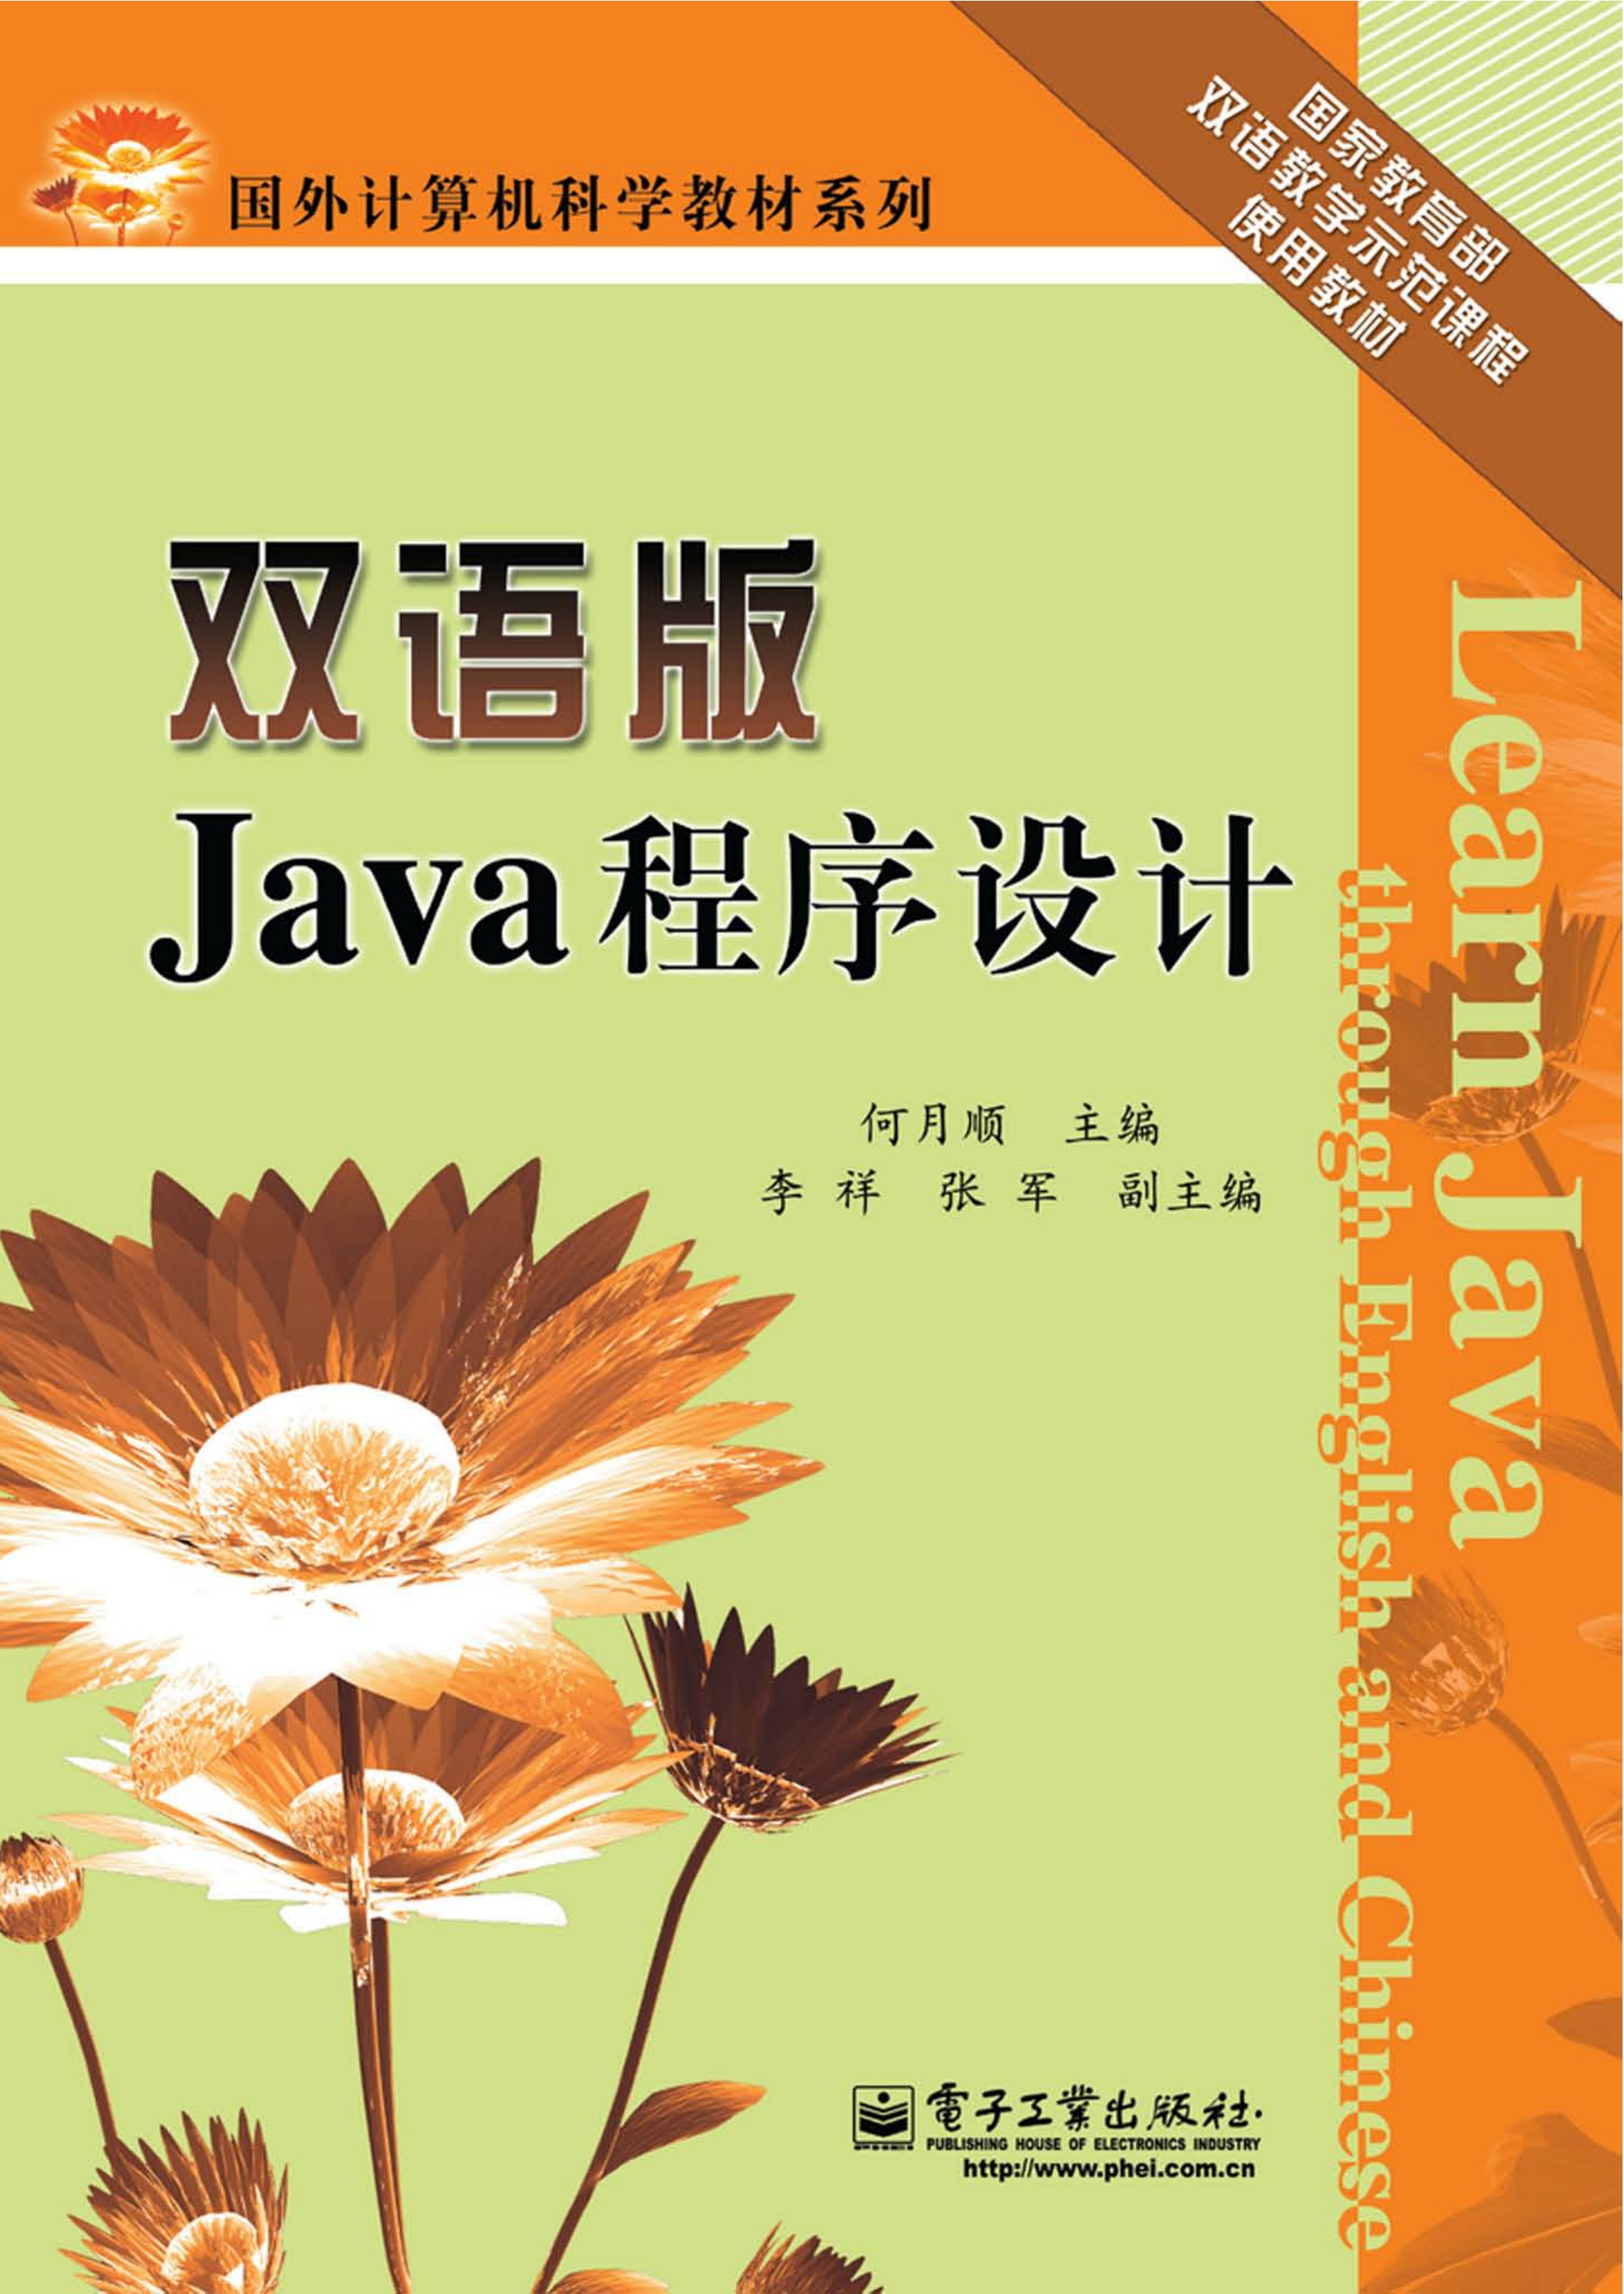 双语版Java程序设计